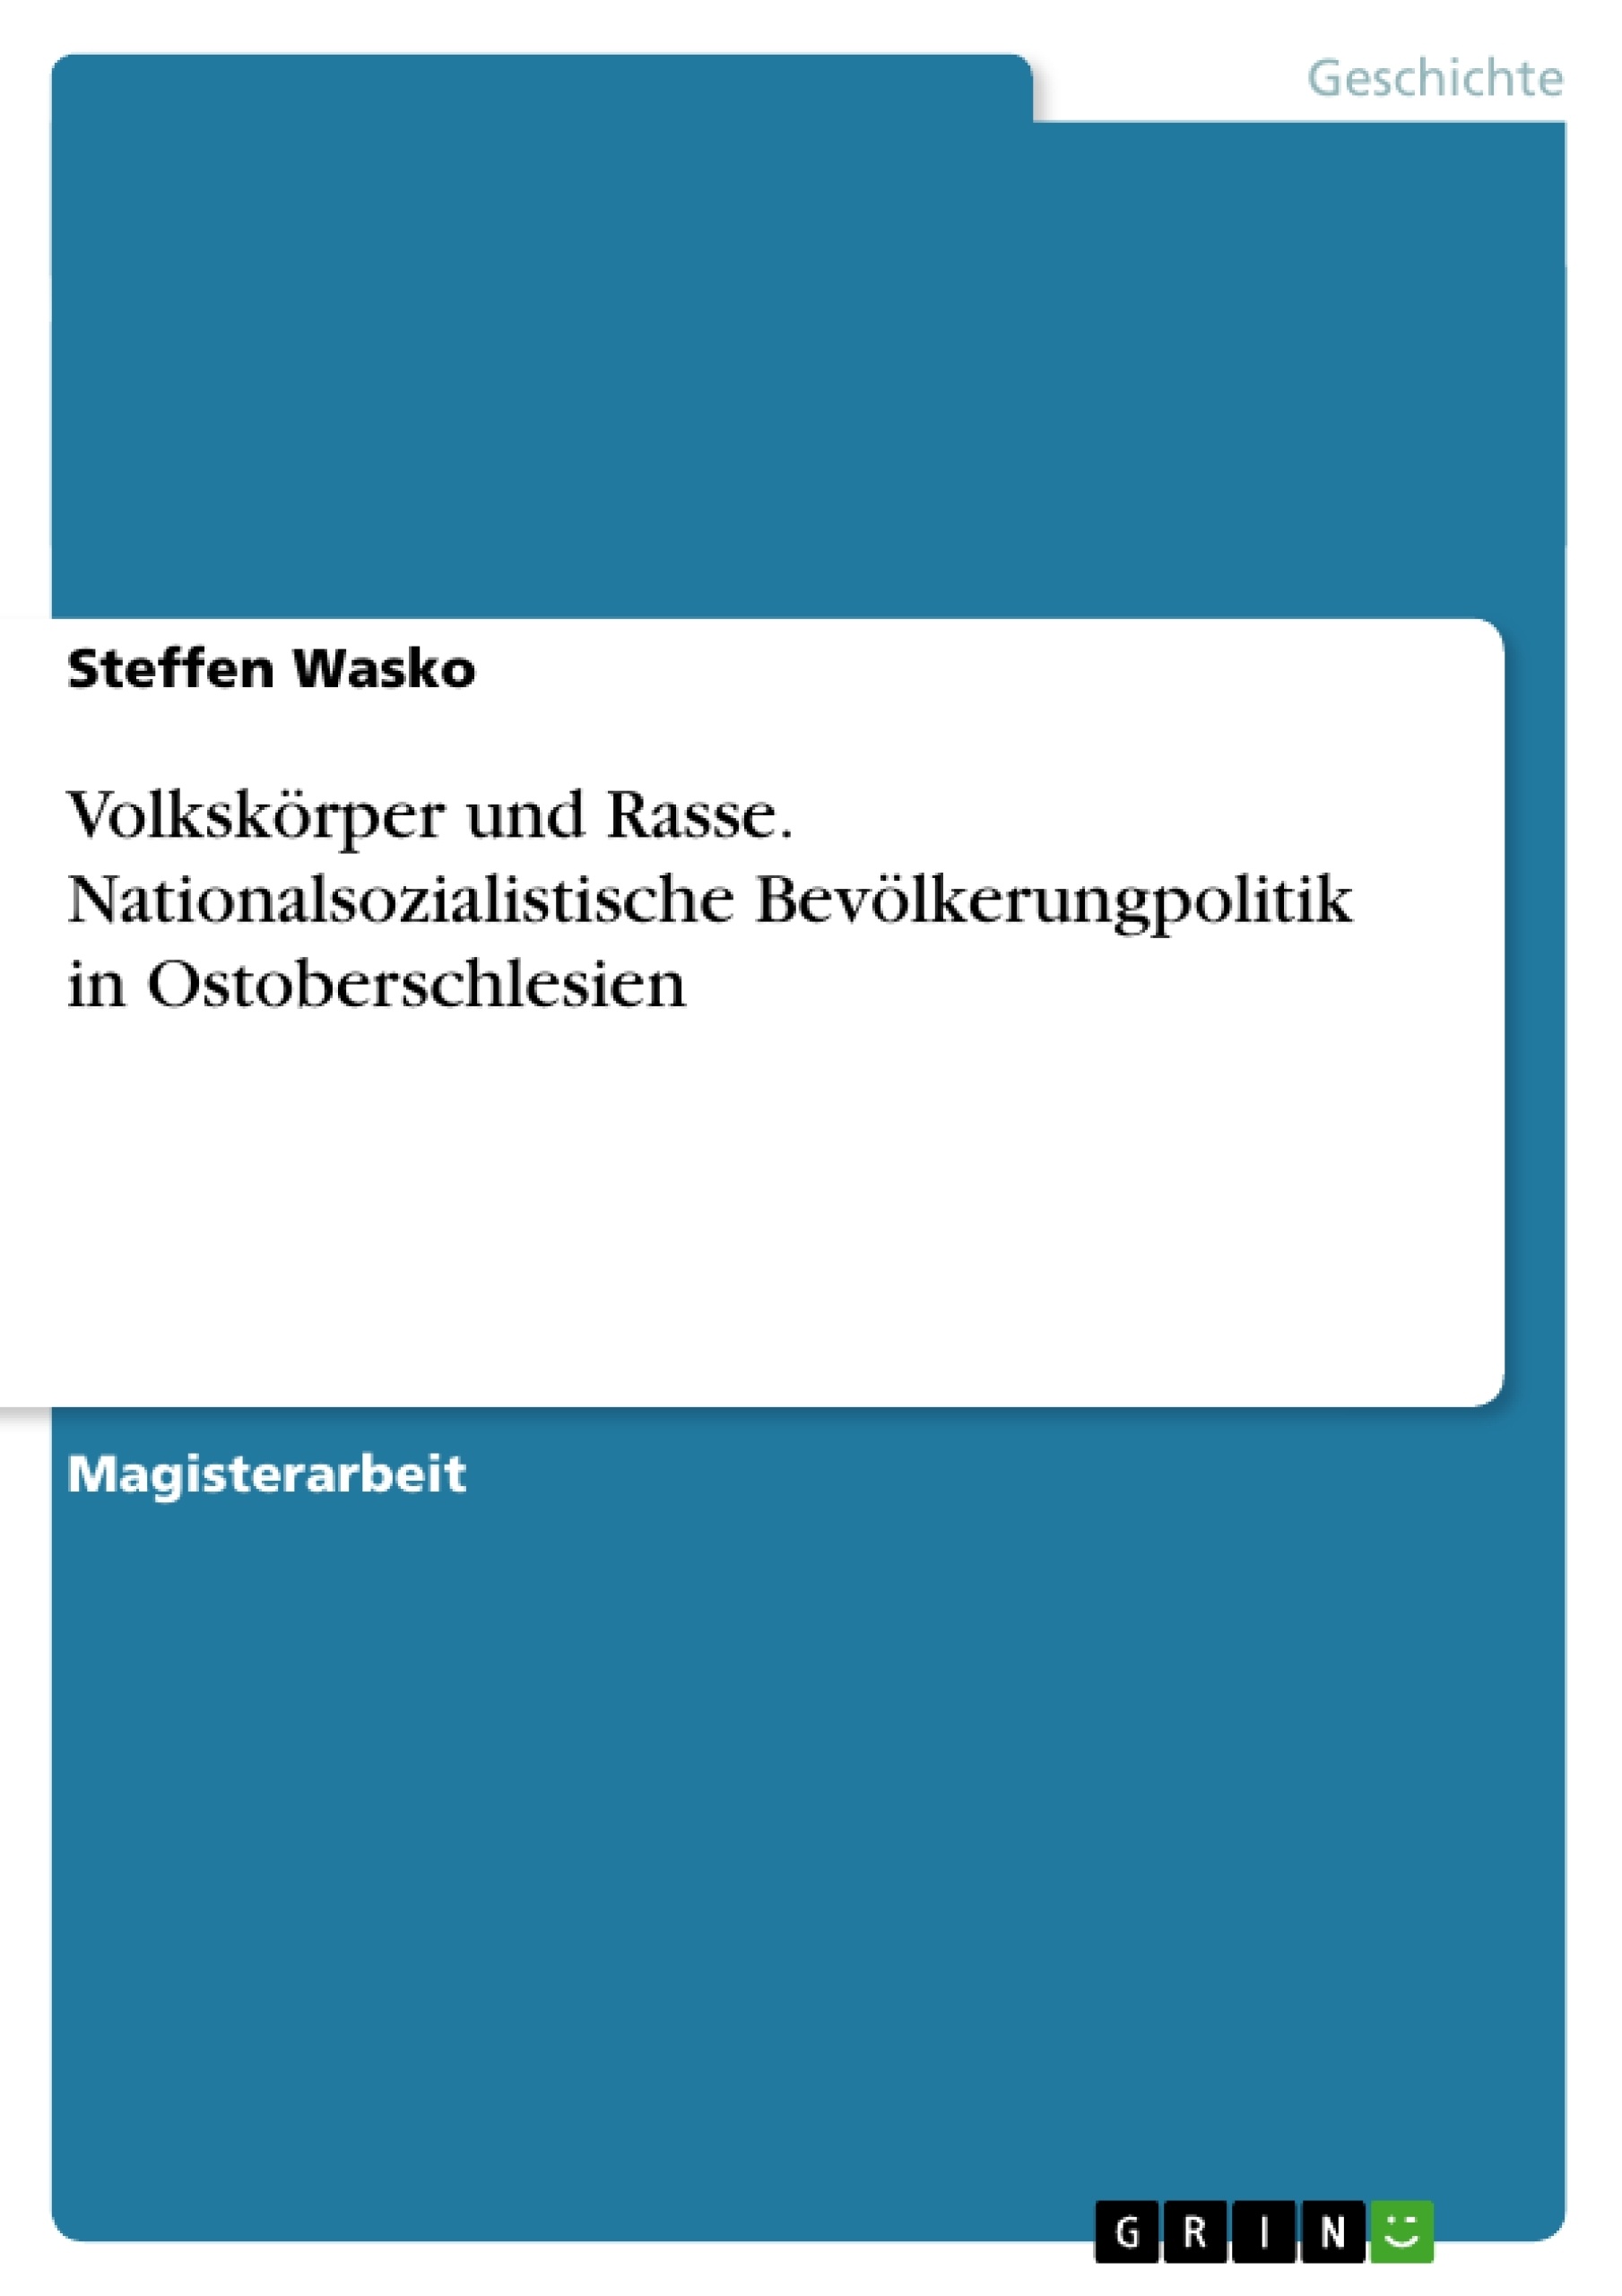 Título: Volkskörper und Rasse. Nationalsozialistische Bevölkerungpolitik in Ostoberschlesien